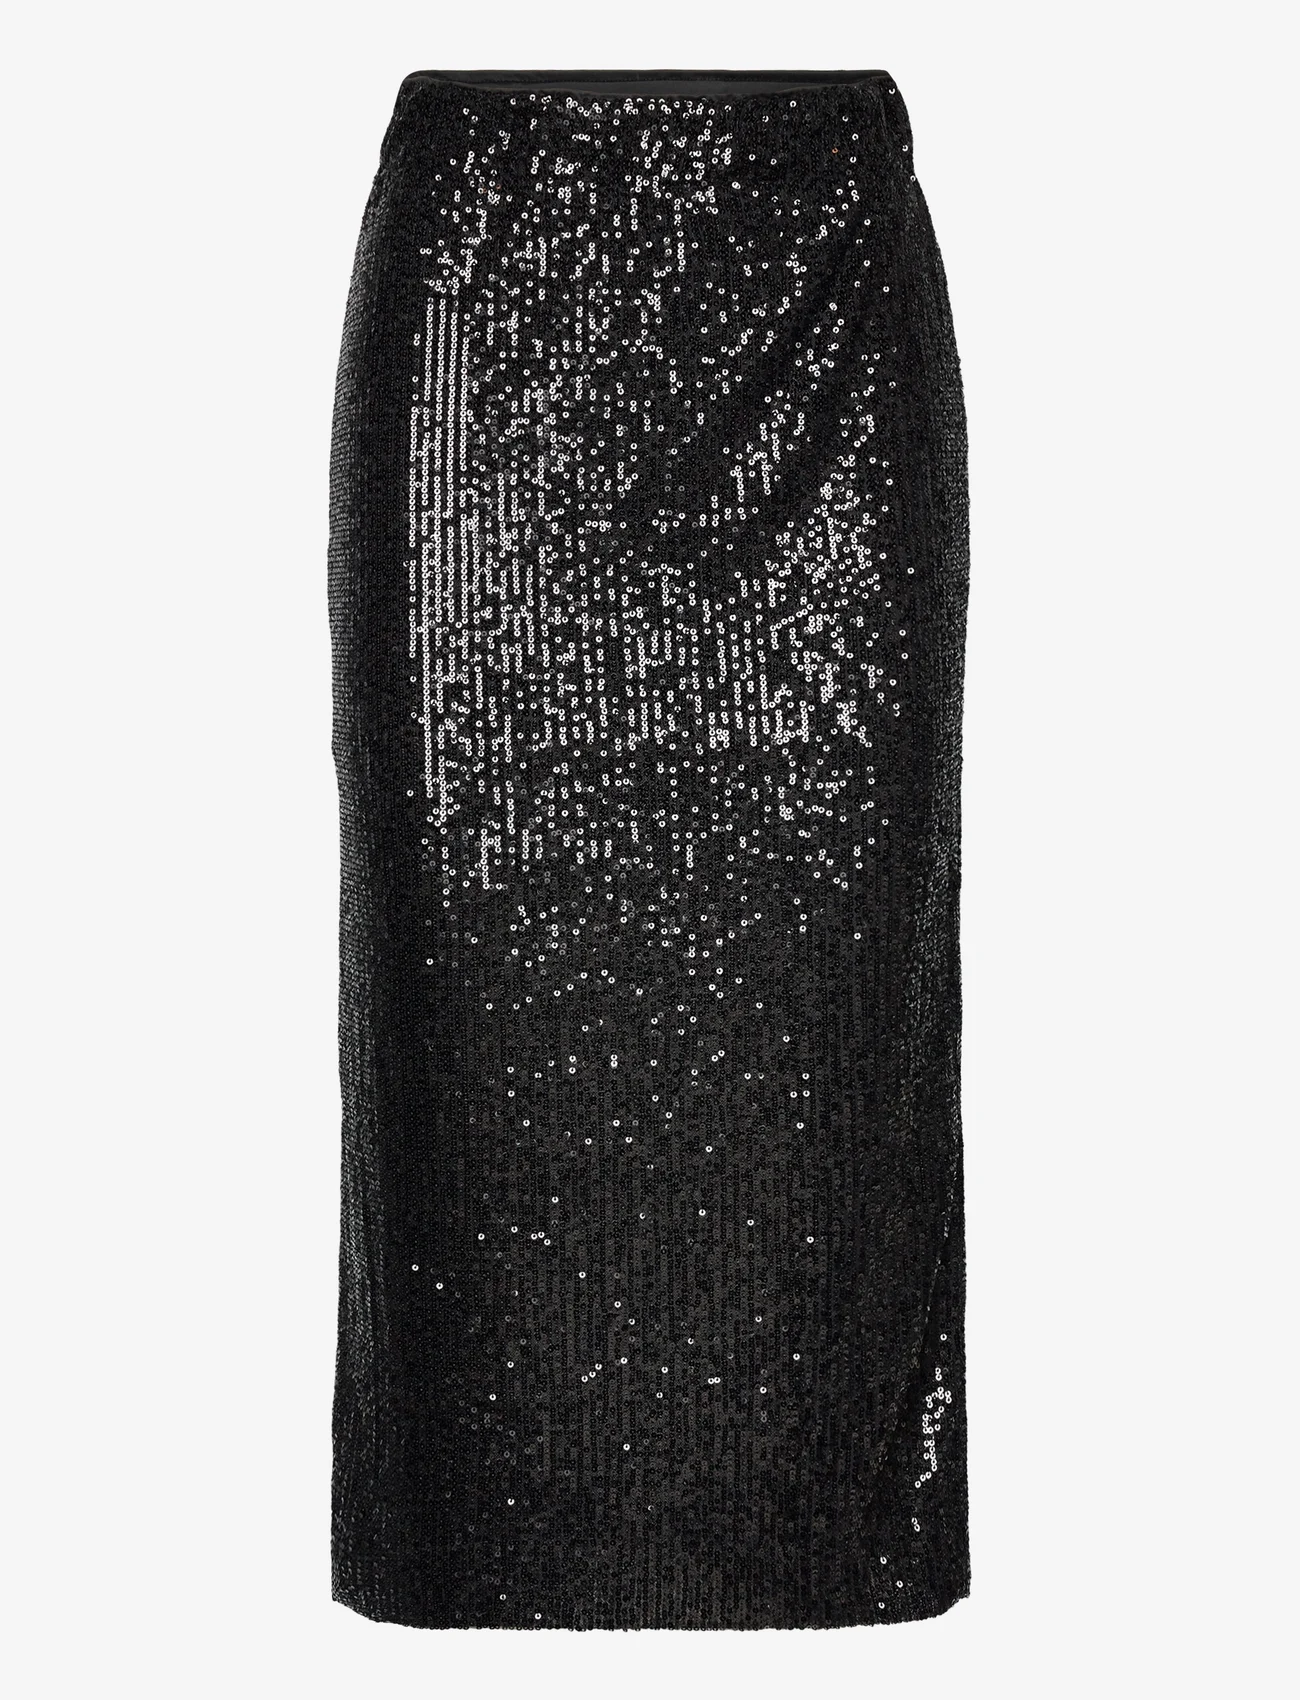 Soaked in Luxury - SLSuse Skirt - bleistiftröcke - black - 0